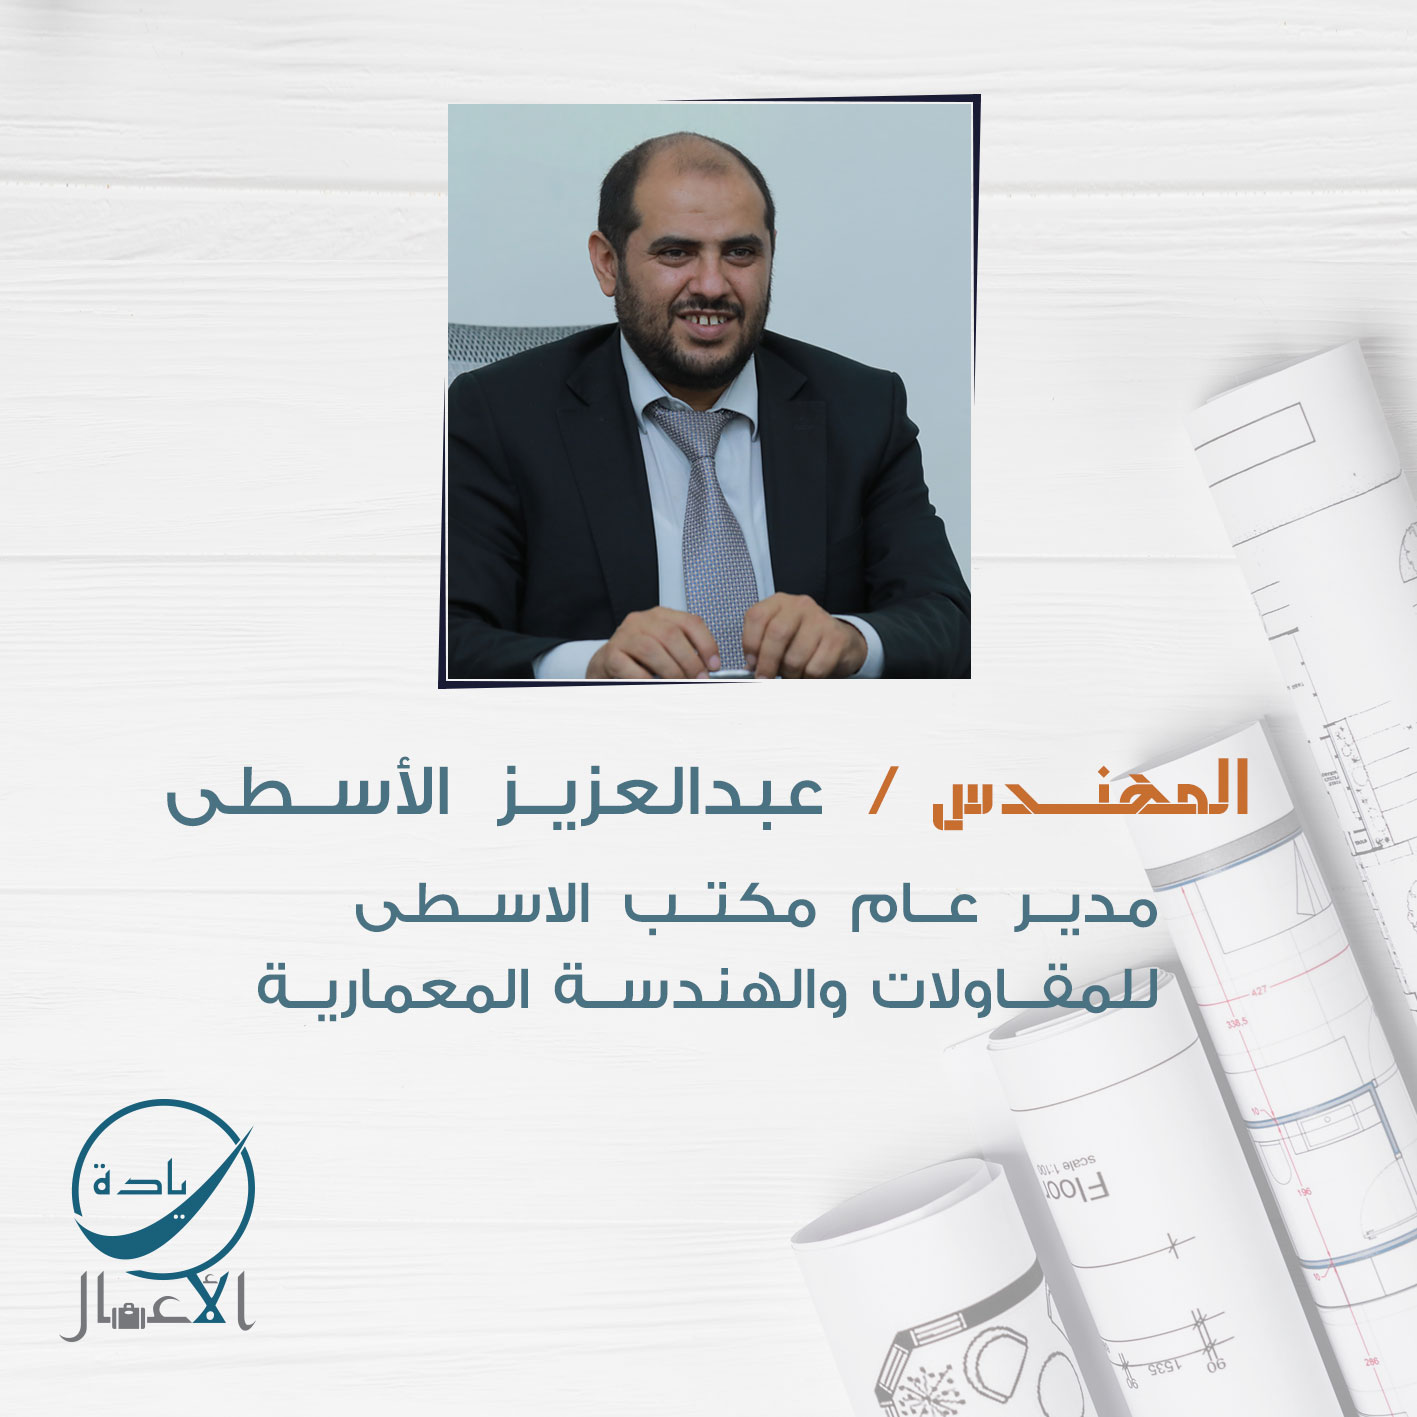 المهندس : عبدالعزيز الأسطى ،، مدير عام مكتب الاسطى للمقاولات والهندسة المعمارية